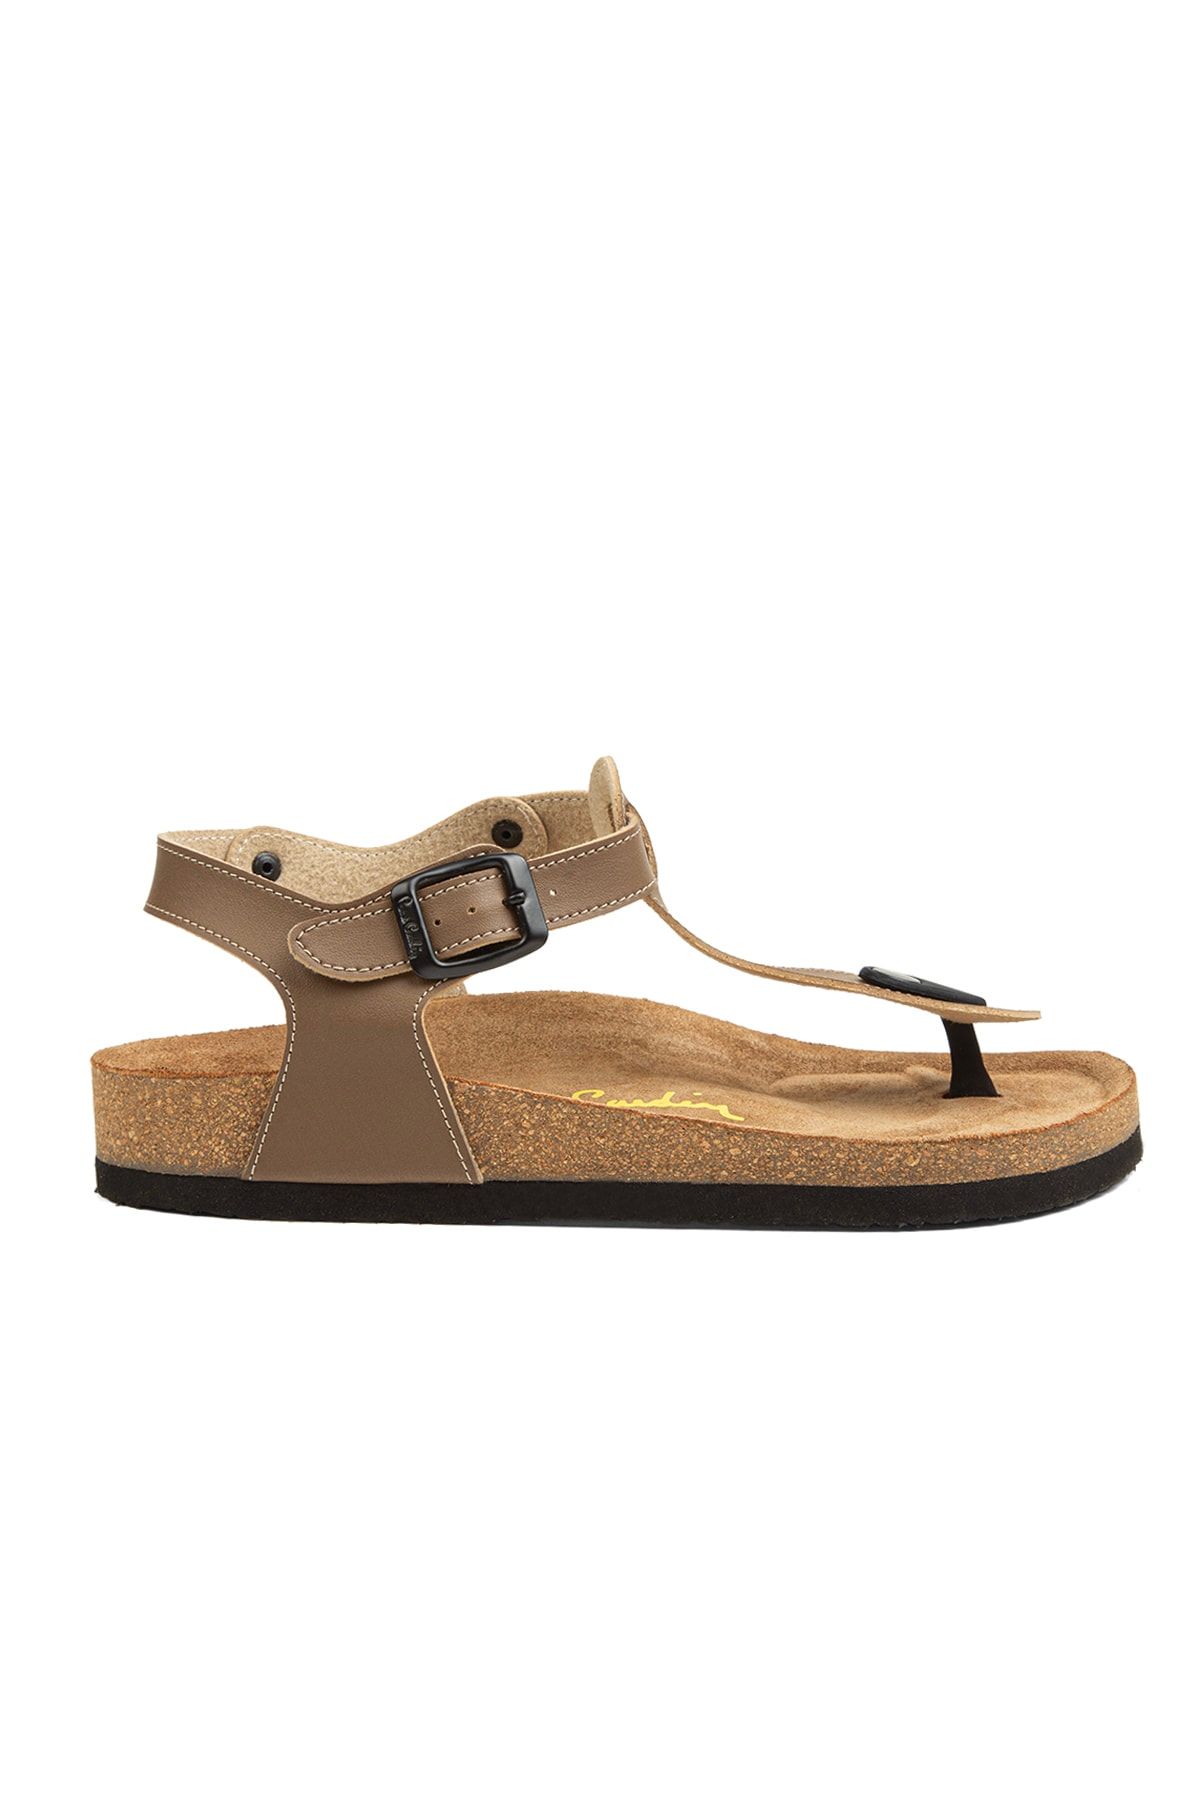 Pierre Cardin ® | Pc-5056 Kum - Kadın Sandalet